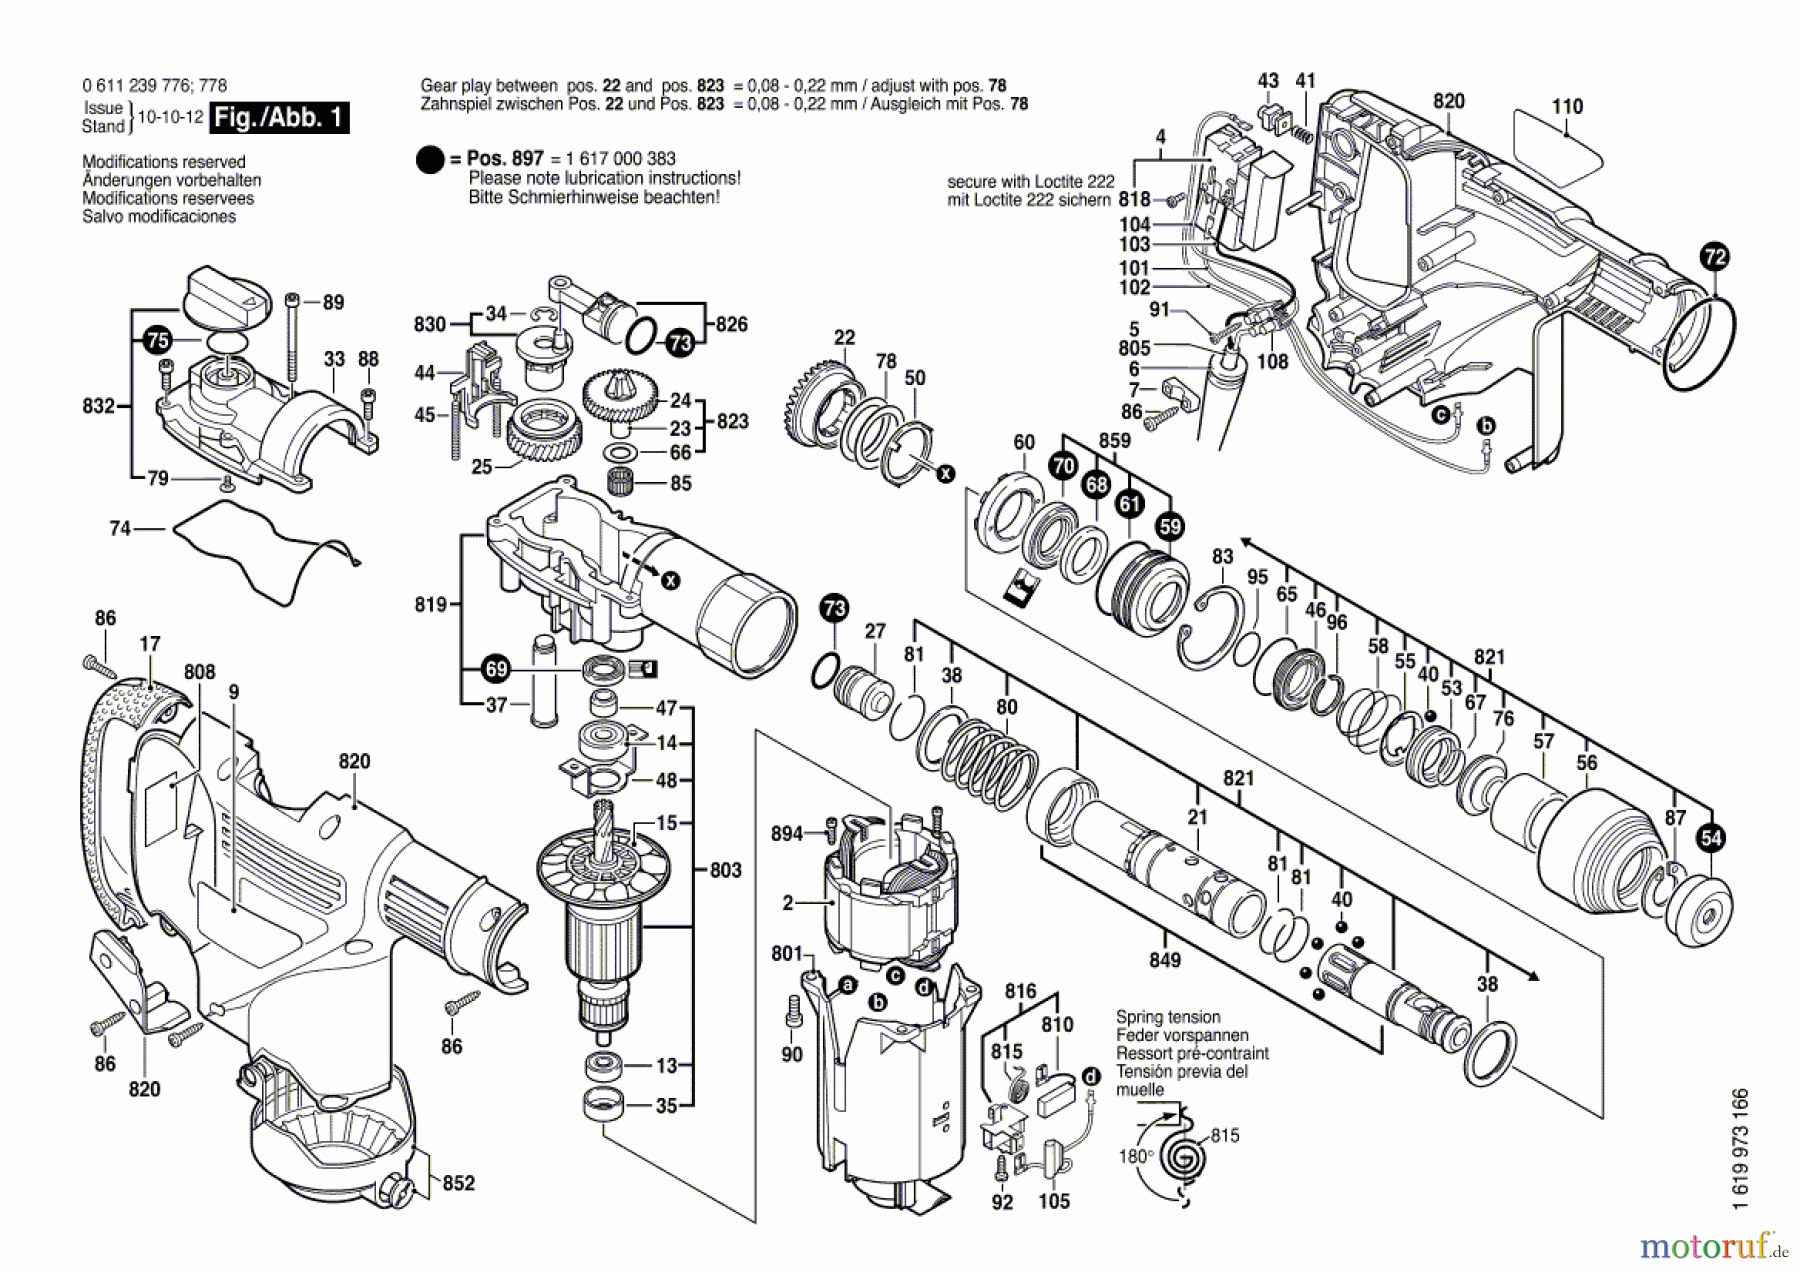  Bosch Werkzeug Bohrhammer GBH 3-28 E Seite 1